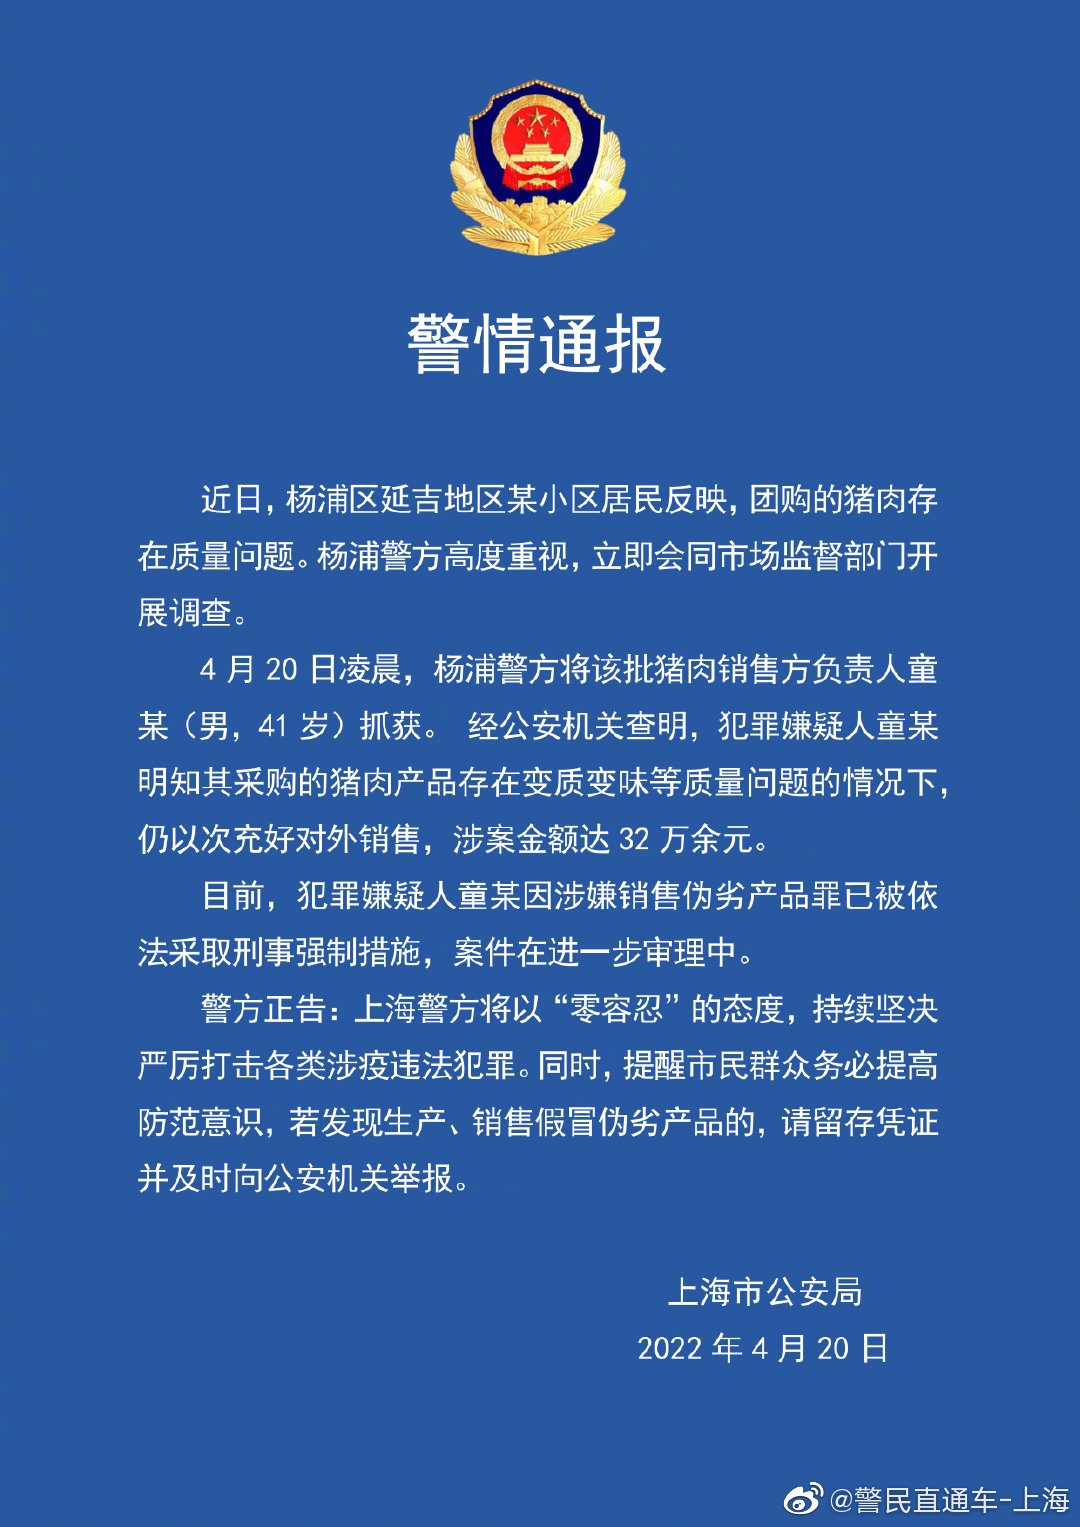 上海：居民团购猪肉存质量问题，销售方负责人被依法采取刑事强制措施